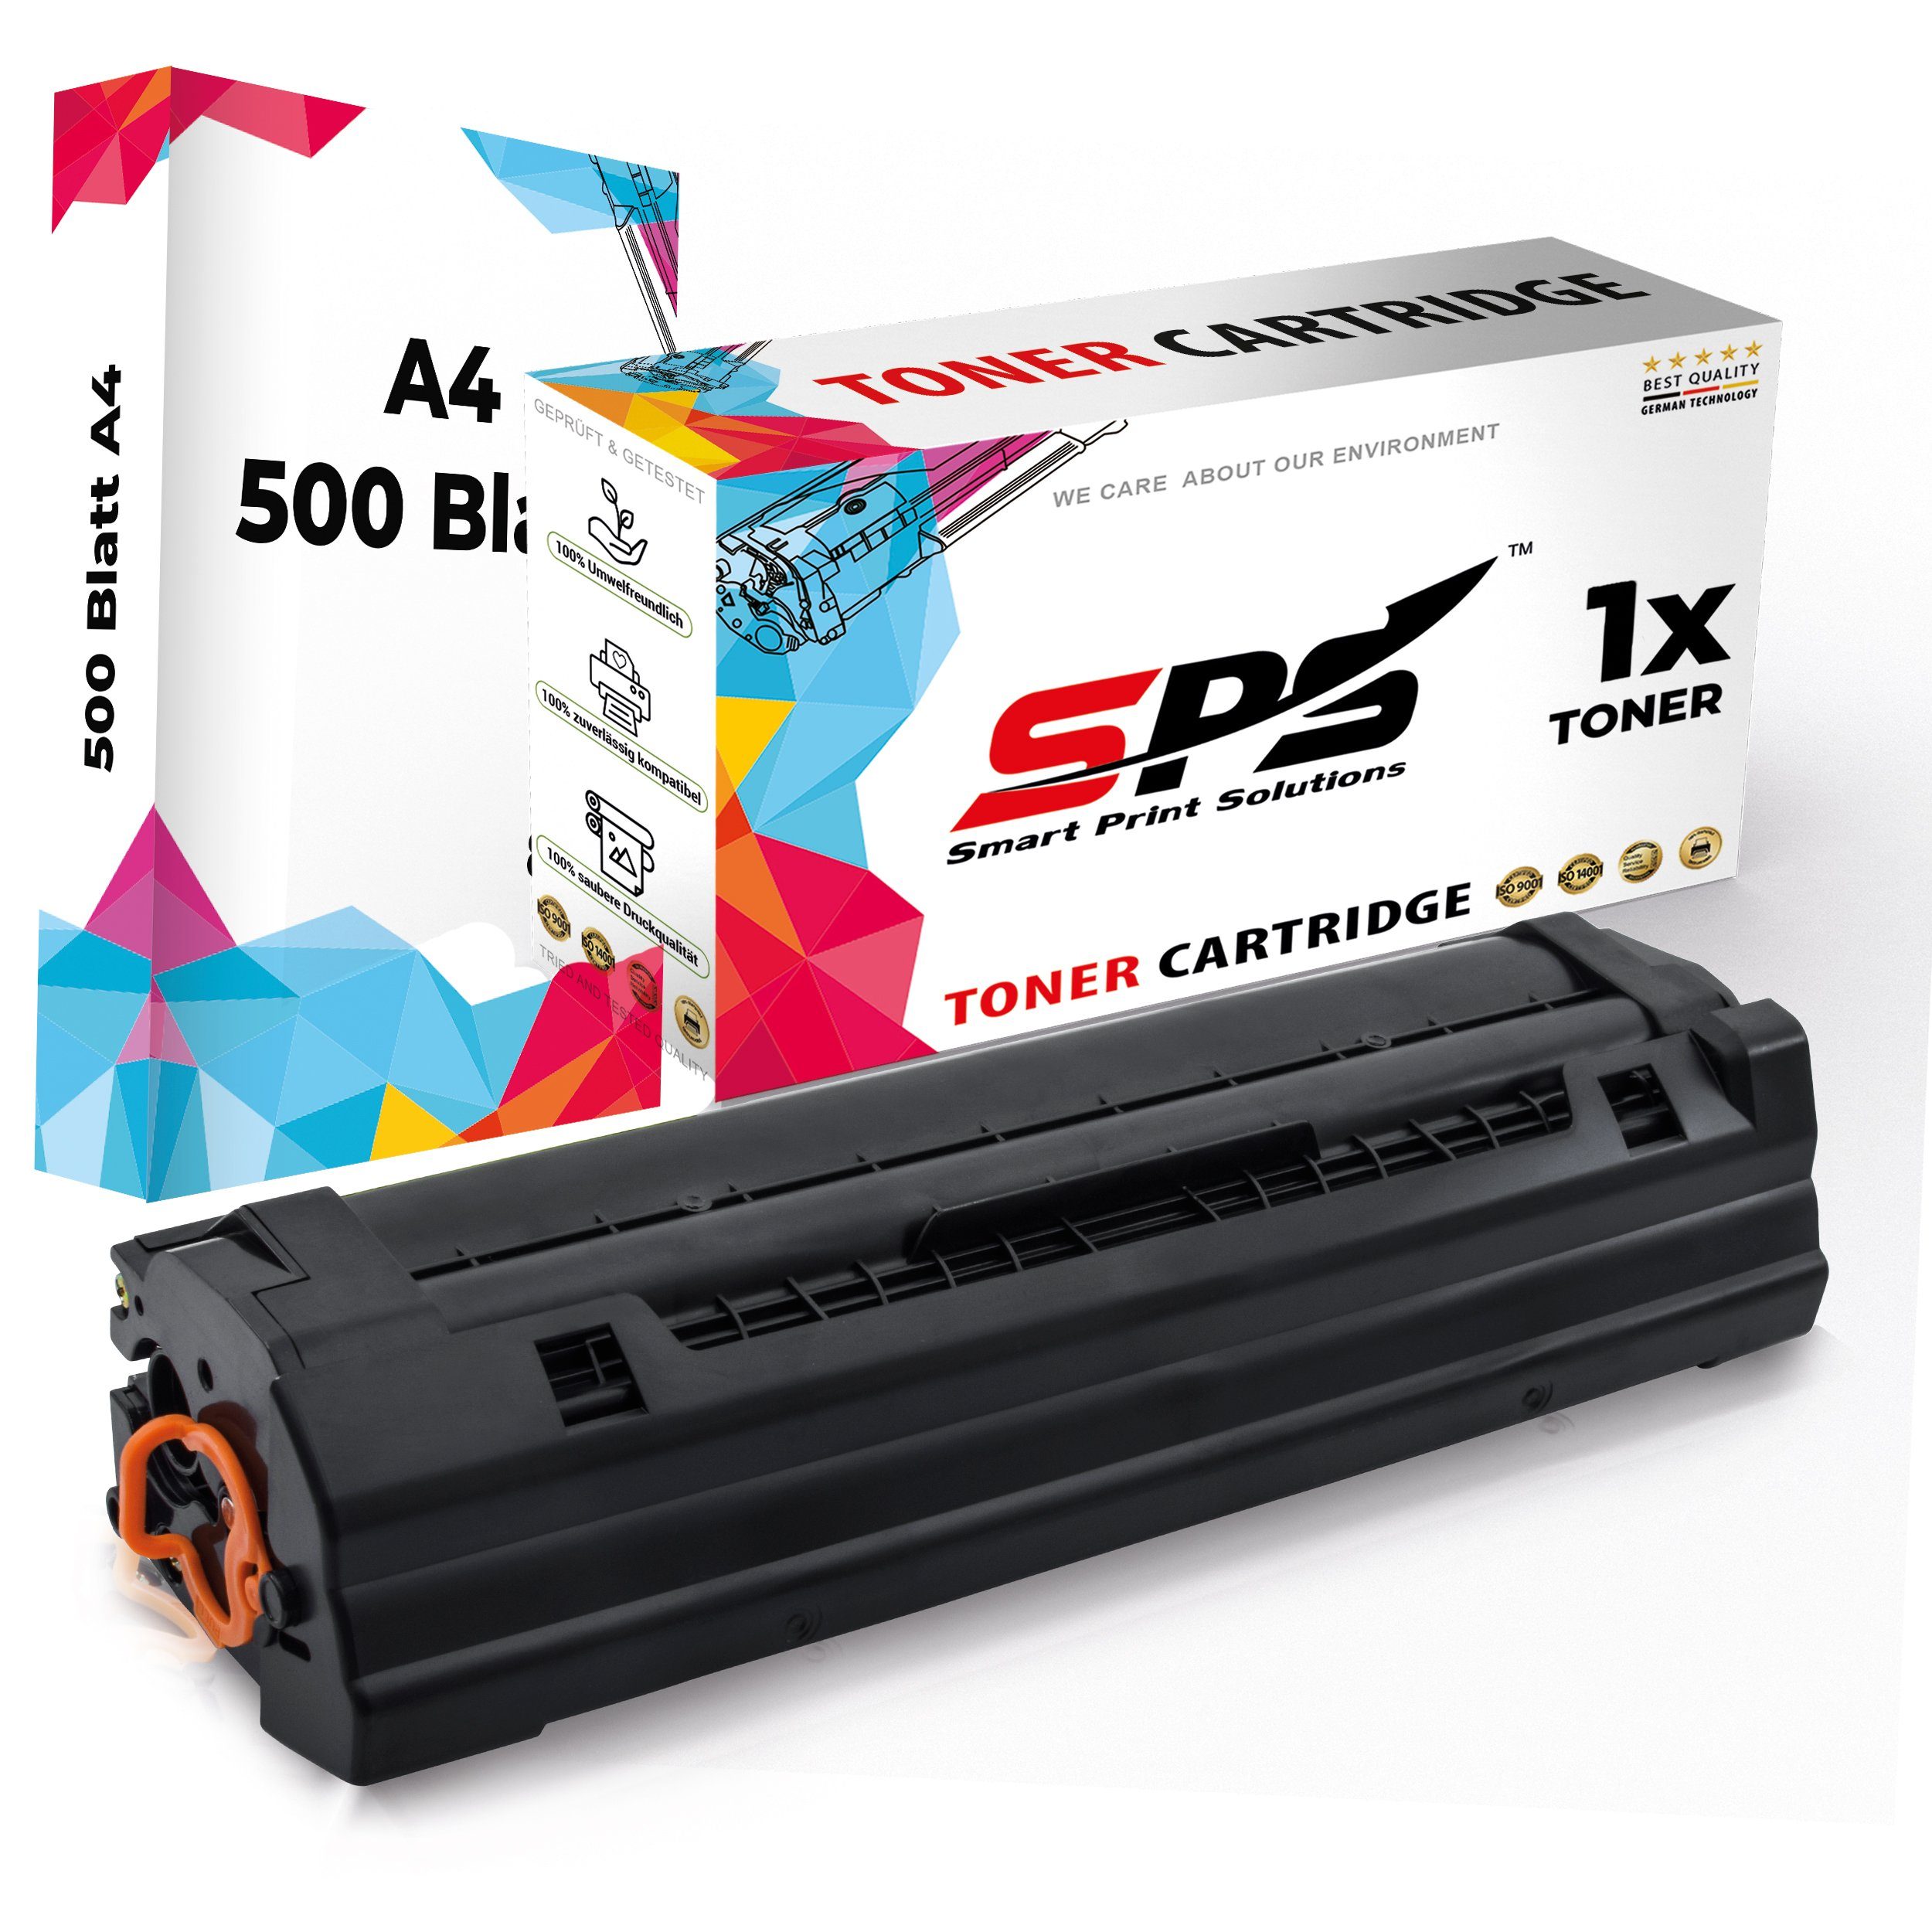 + SPS MLT-D111, Tonerkartusche 111L Schwarz A4 Pack Samsung 1x Xpress (1er M2070F Toner) für Papier, Kompatibel